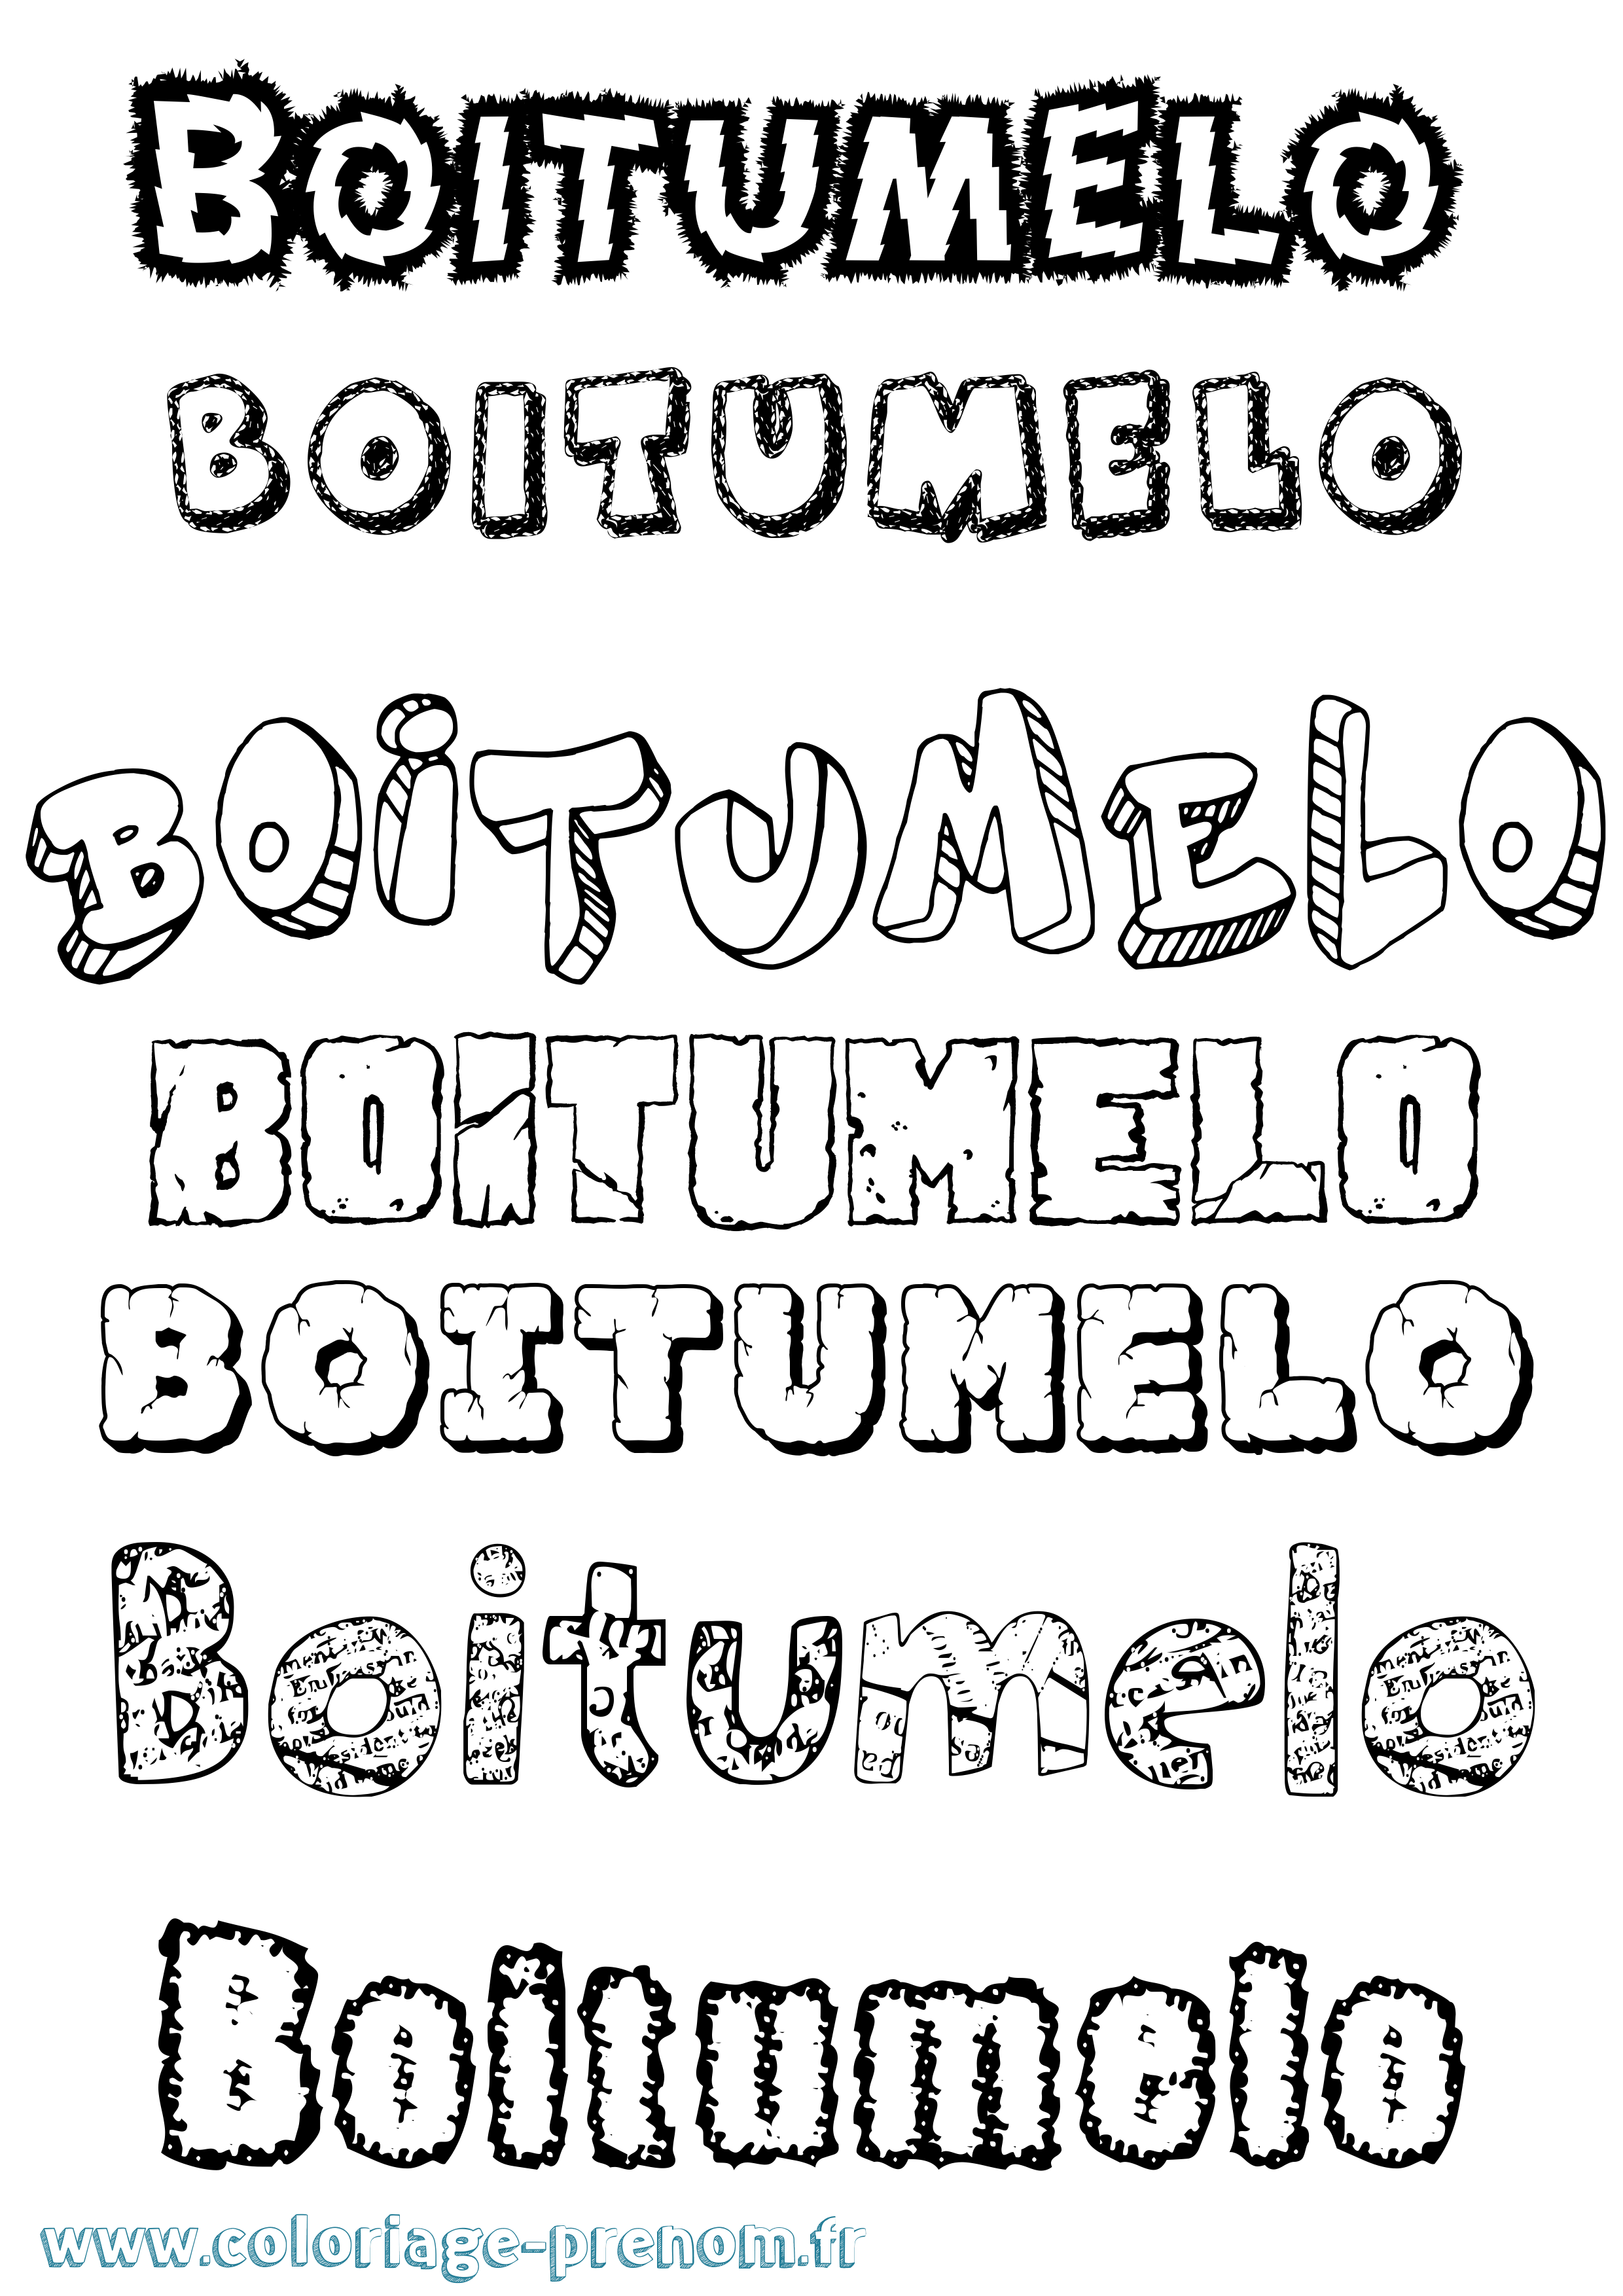 Coloriage prénom Boitumelo Destructuré